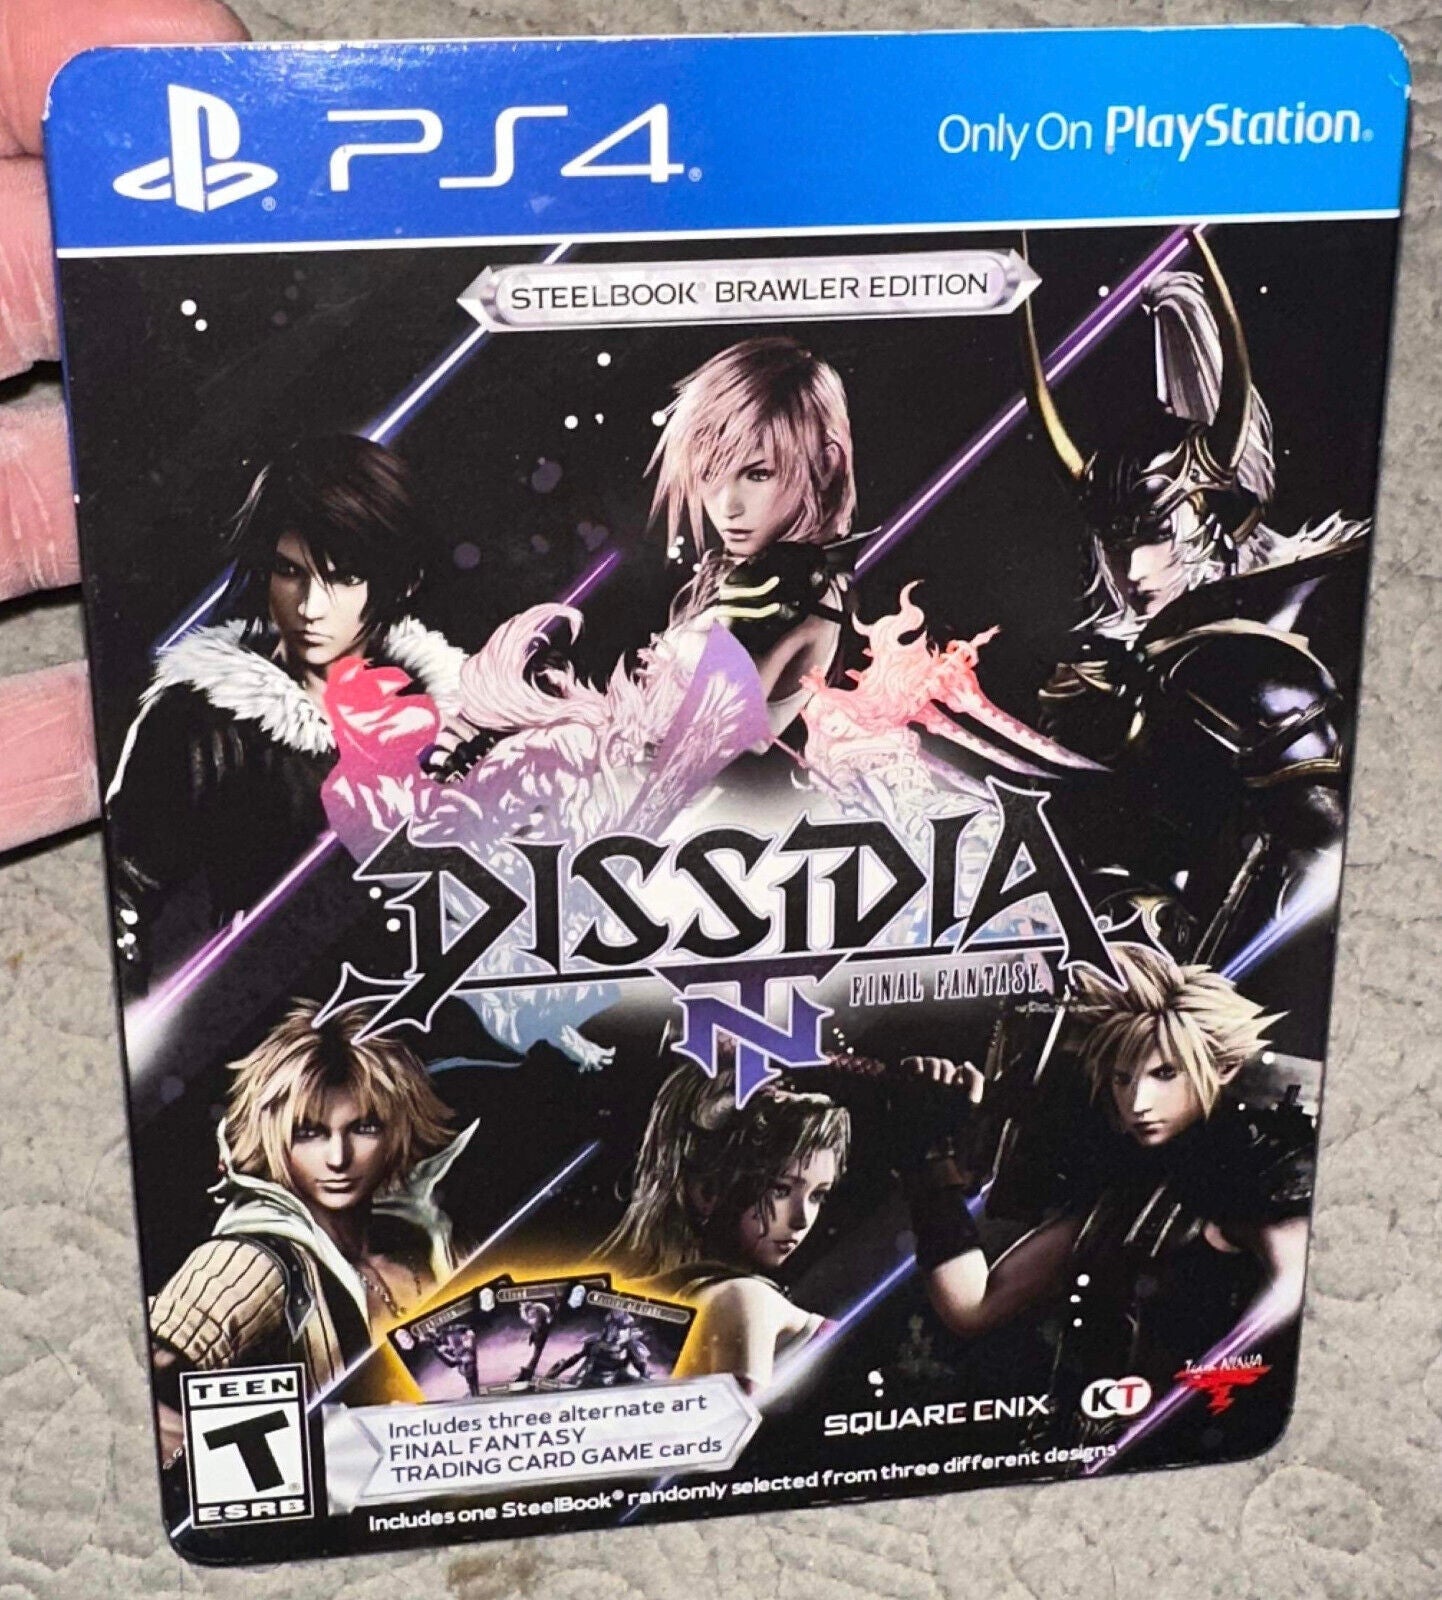 Dissidia Final Fantasy NT - Steelbook Brawler Edition (Playstation PS4) w Card